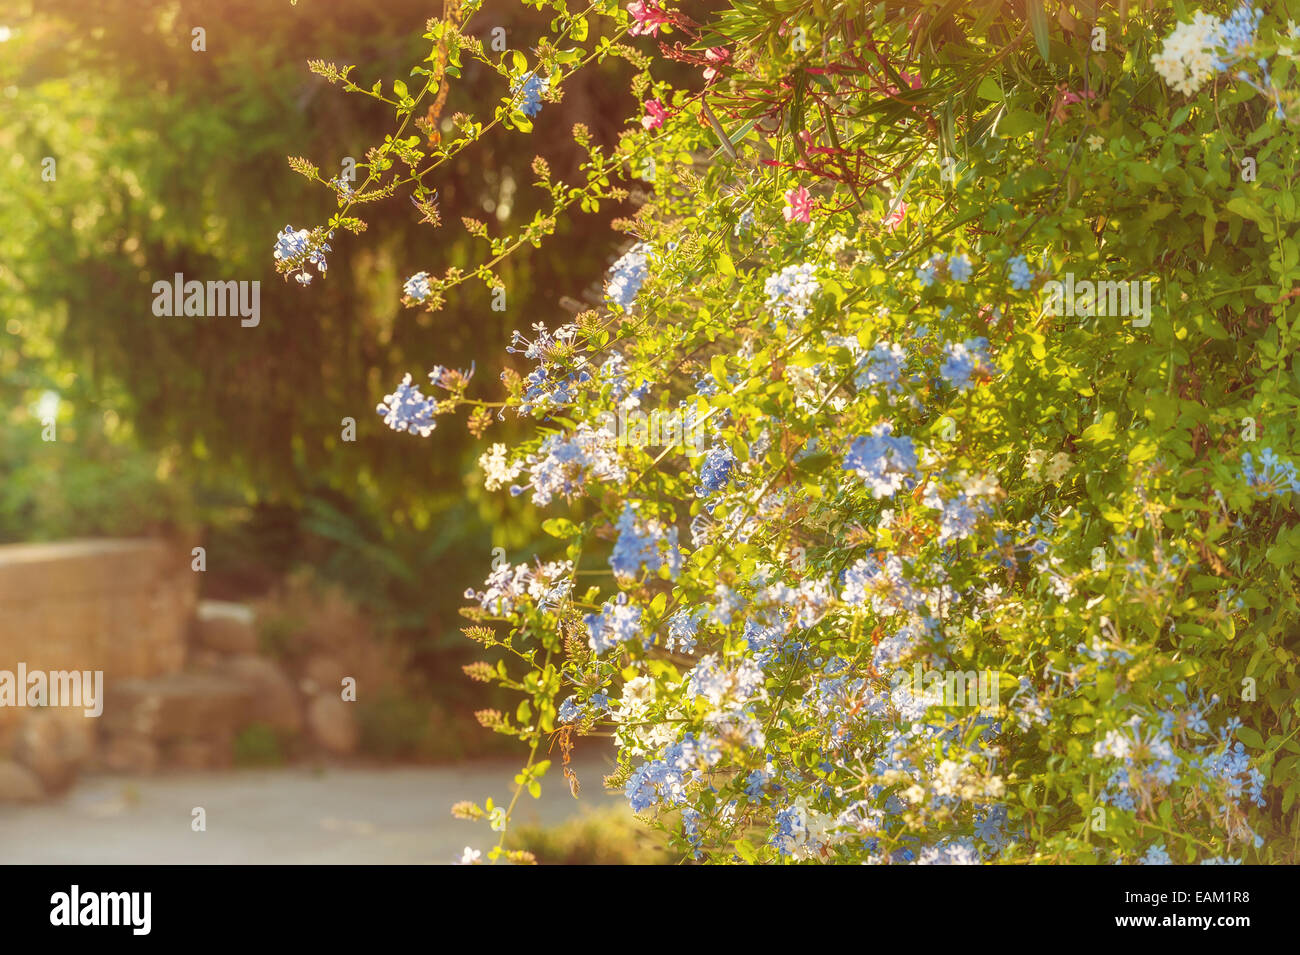 Fiori blu presso la famiglia rurale in Toscana in una bella giornata di sole Foto Stock